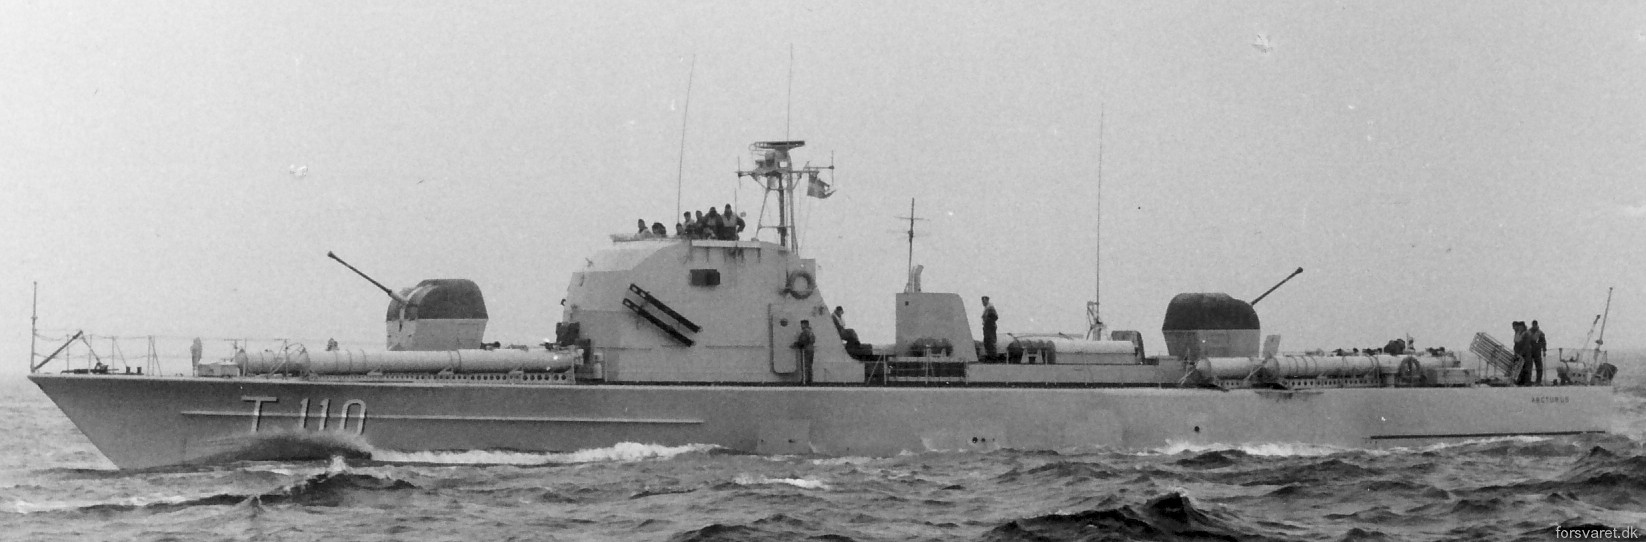 t110 arcturus hms hswms plejad class fast attack craft torpedo boat vessel swedish navy svenska marinen 02